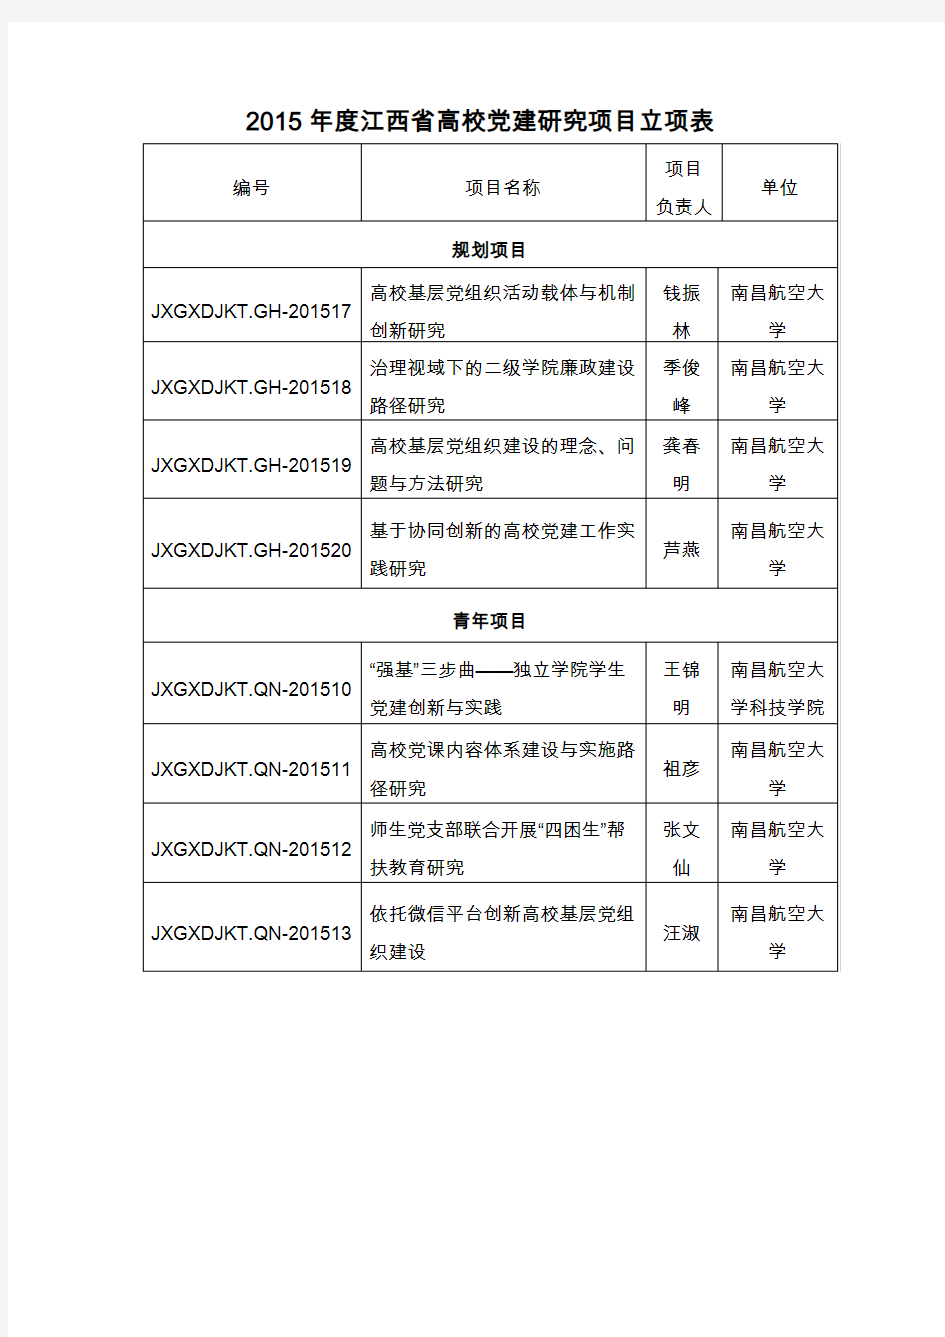 《2019年度江西省高校党建研究项目立项表》